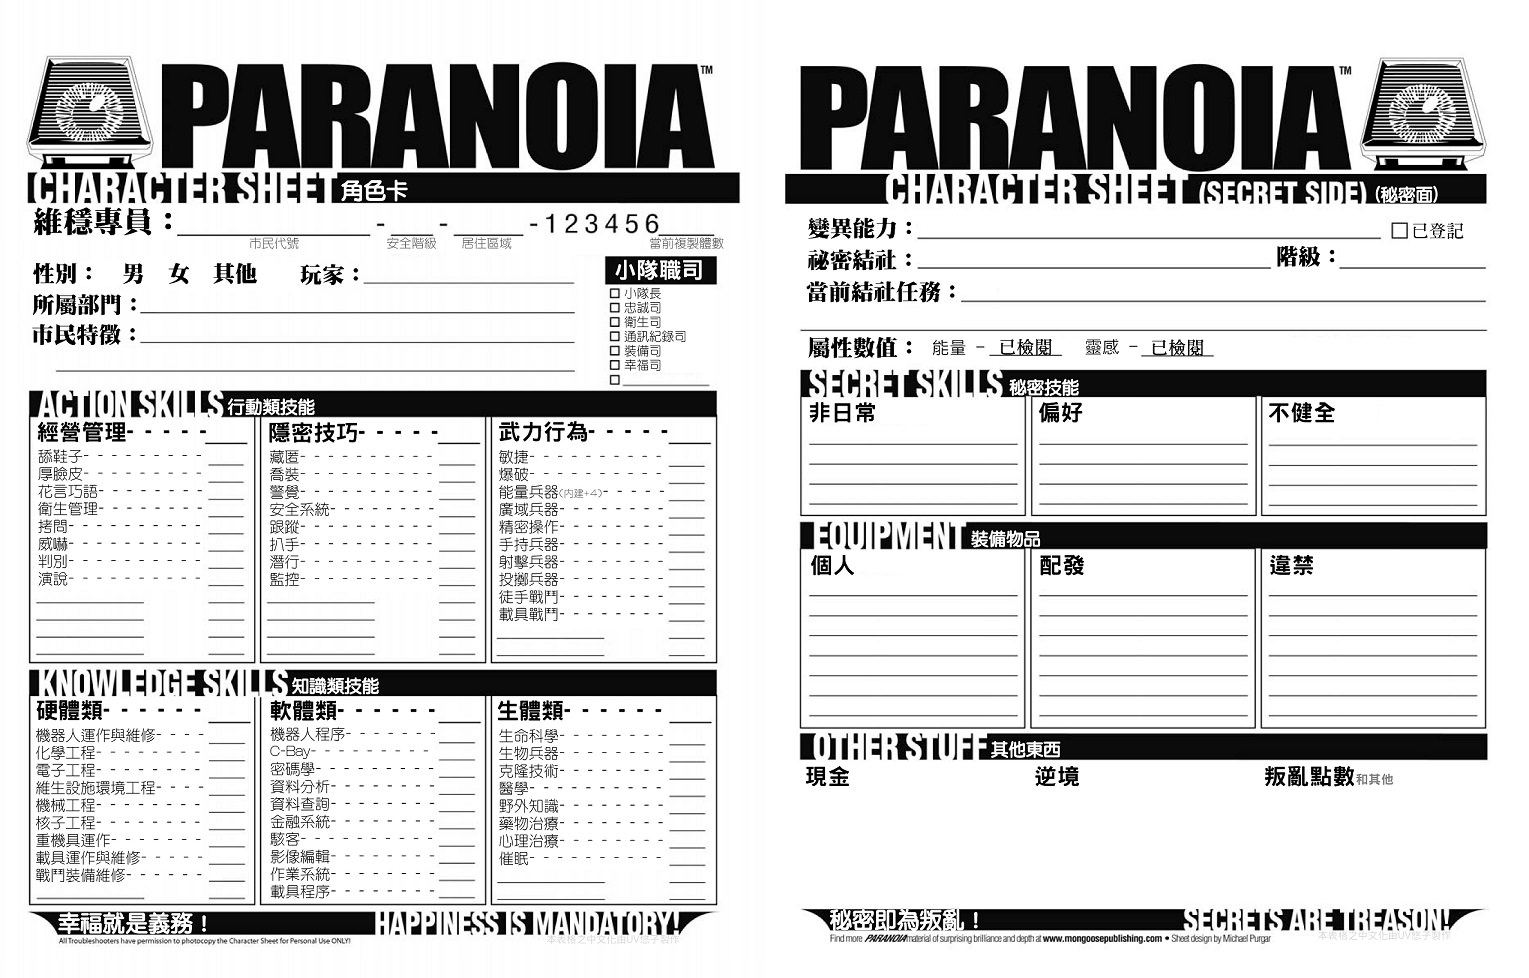 Paranoia 25周年版角色卡 屏風後的囈語